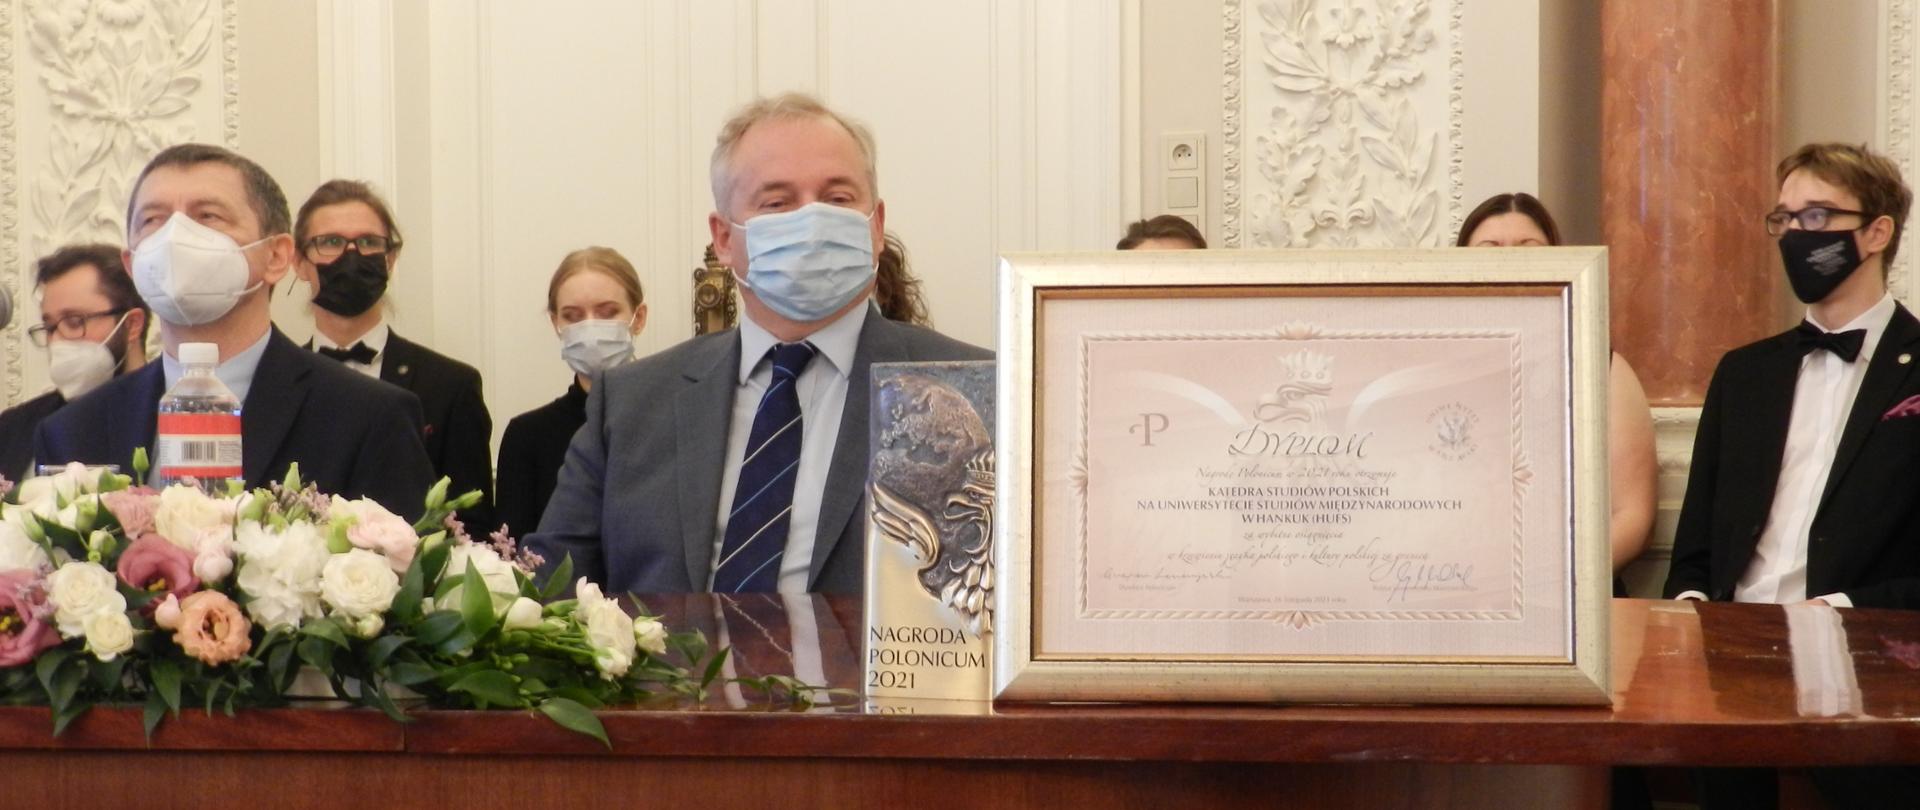 Zdjęcie przedstawiające uroczystość wręczenia nagrody Polonicum